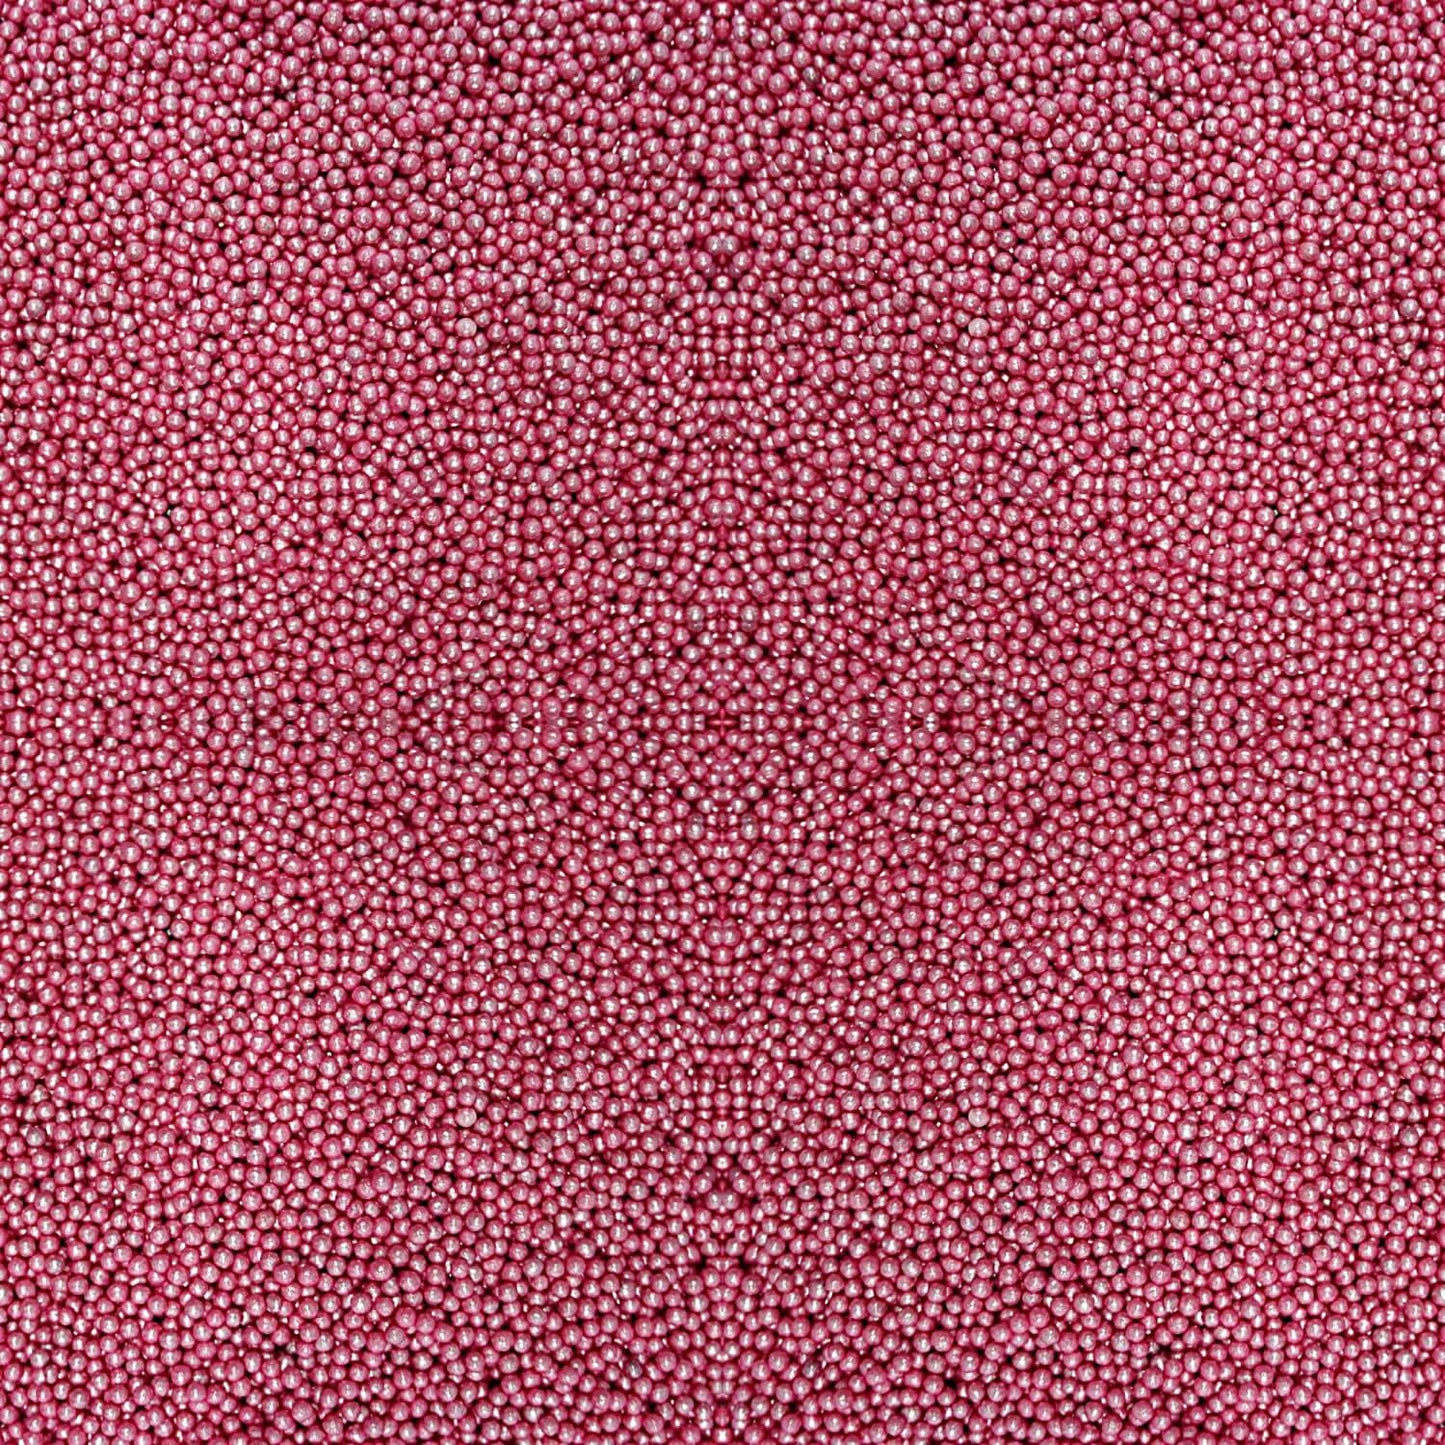 Confect Pink Disco Balls Sprinkles 2 MM 120 Gms